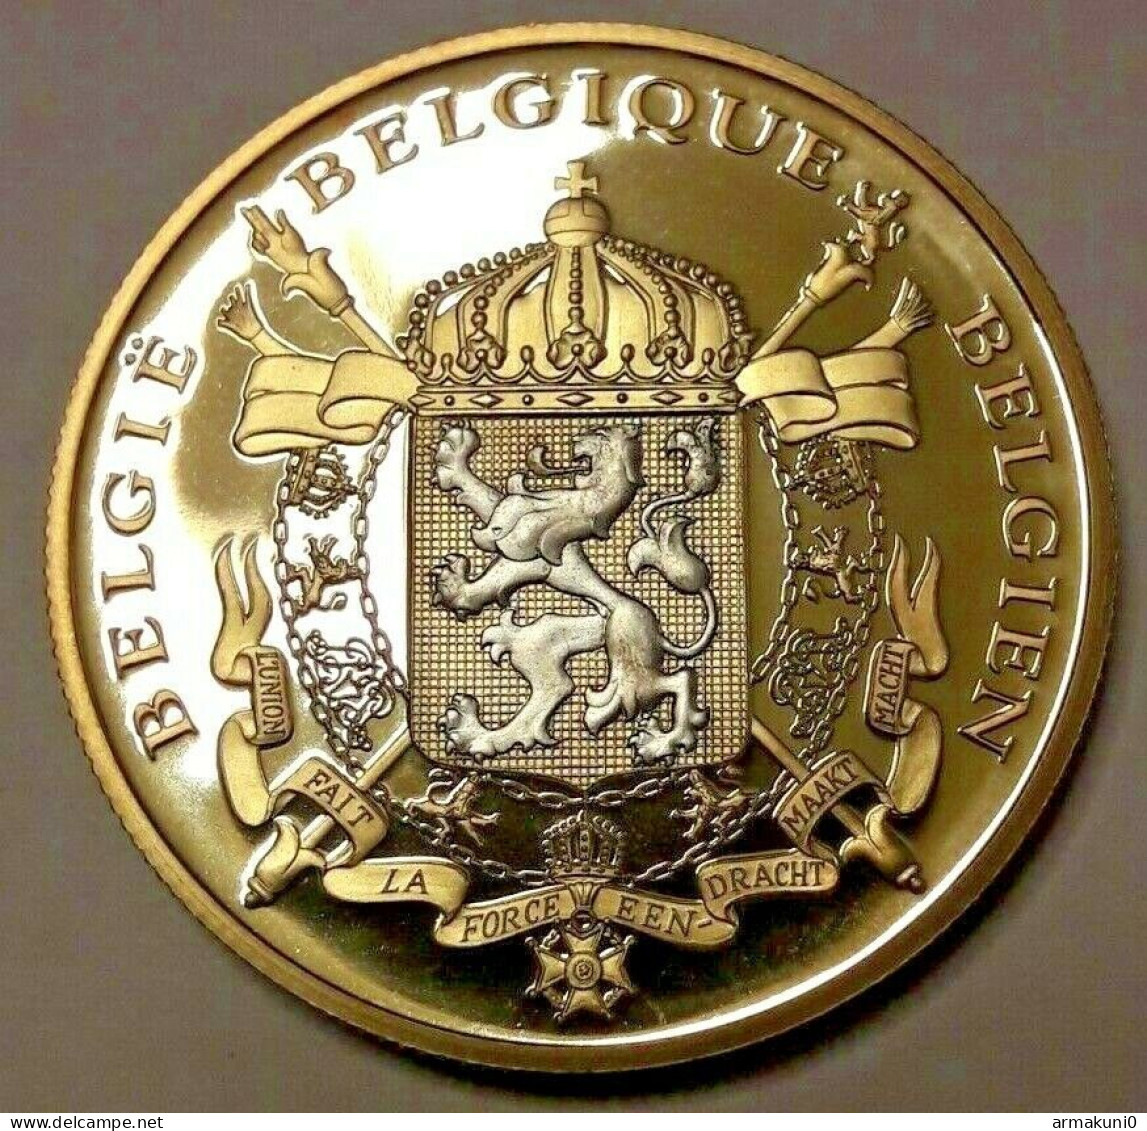 Medaille Albert II Belgarum Reges 2013 Philippe L'abdication Du Roi Albert II - Monarchia / Nobiltà